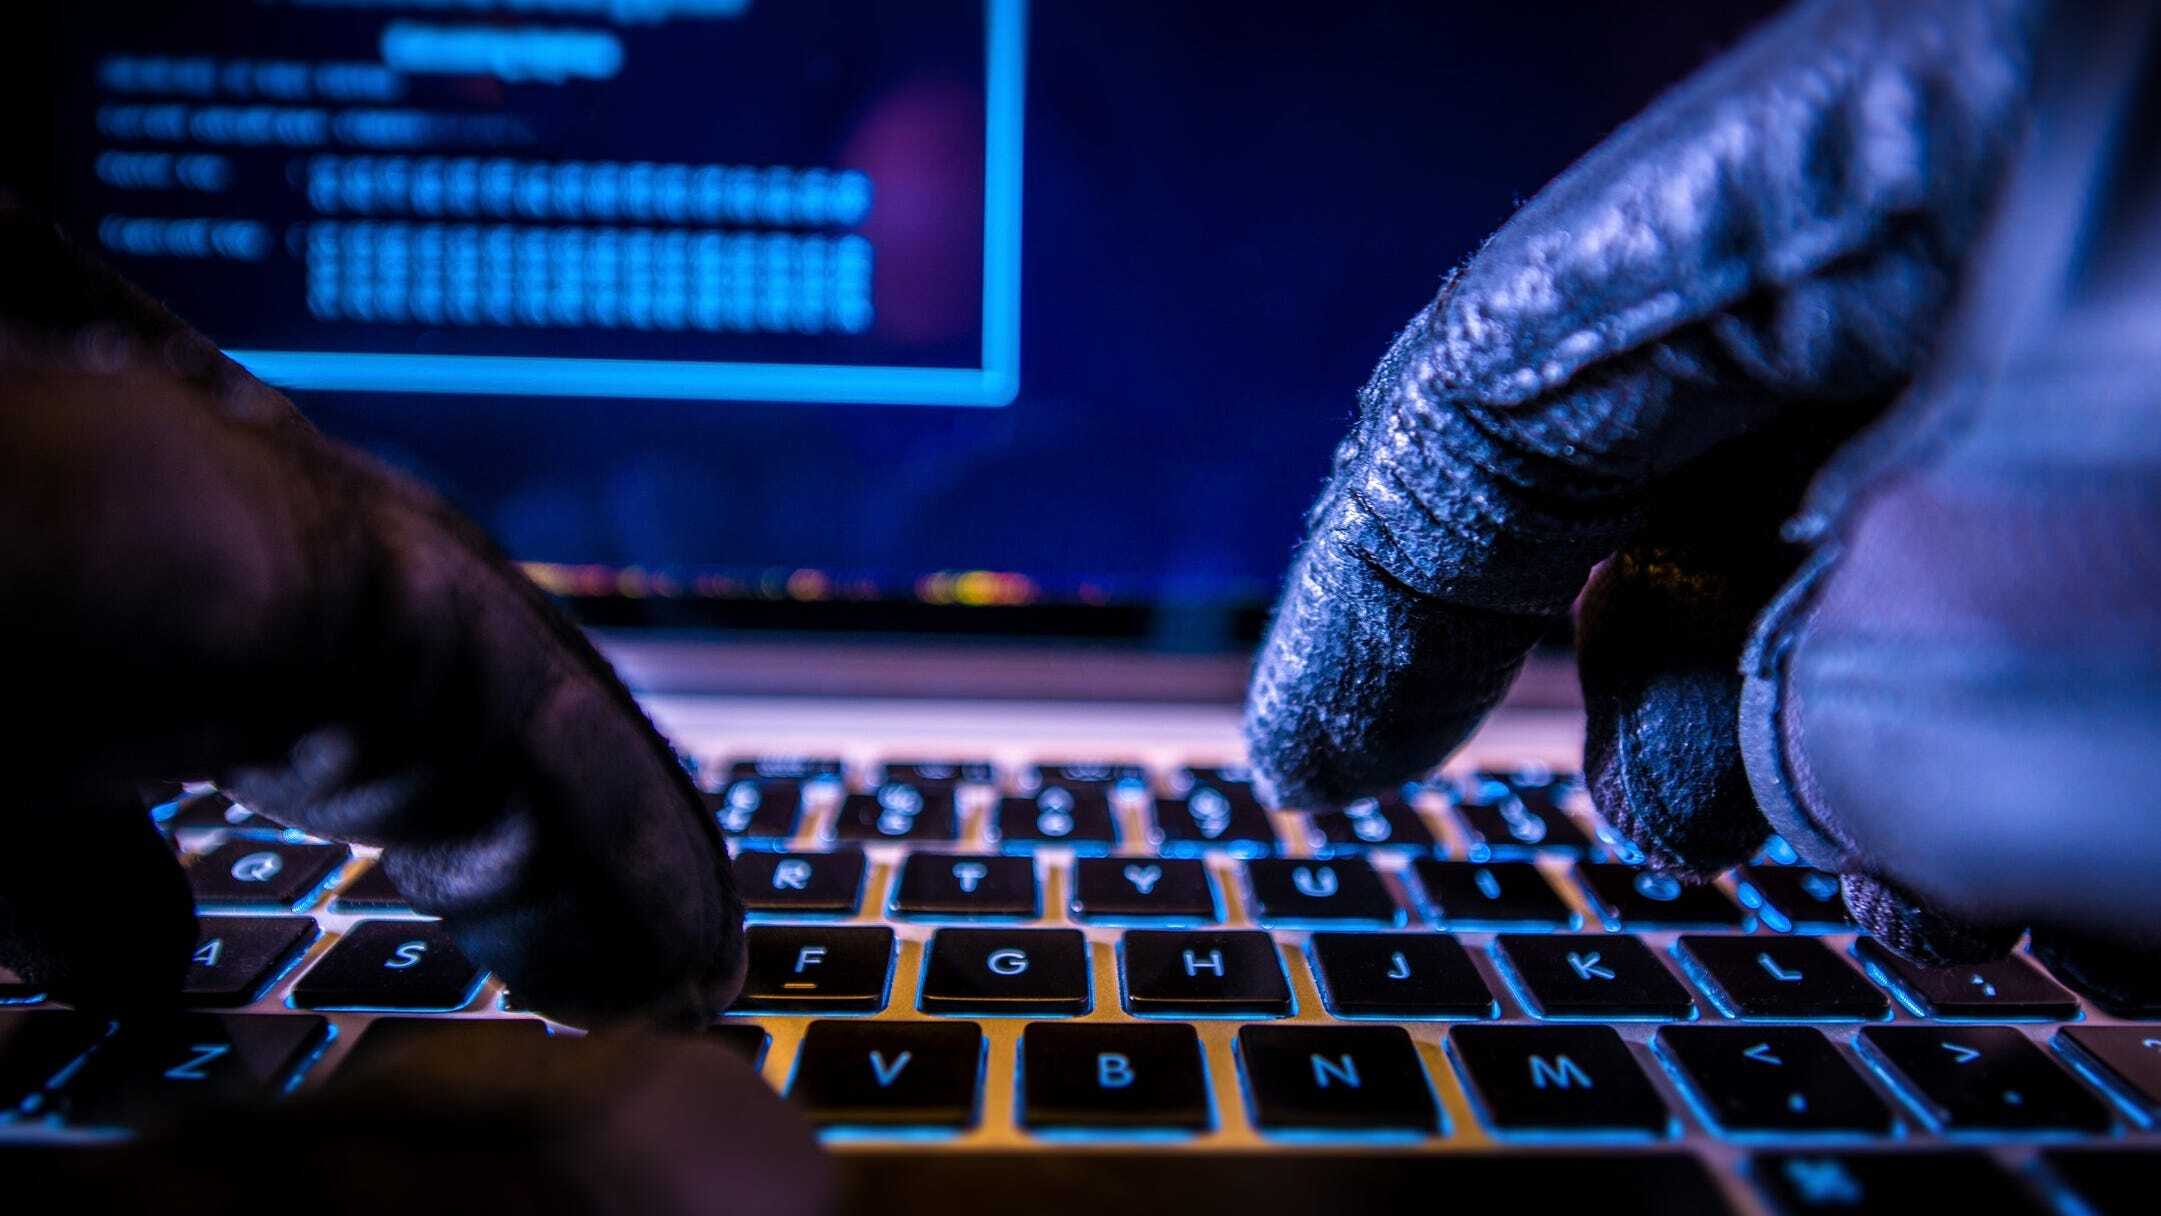 Хакеры не будут взламывать вашу компанию через компьютер. Они взломают её через смартфоны ваших работников